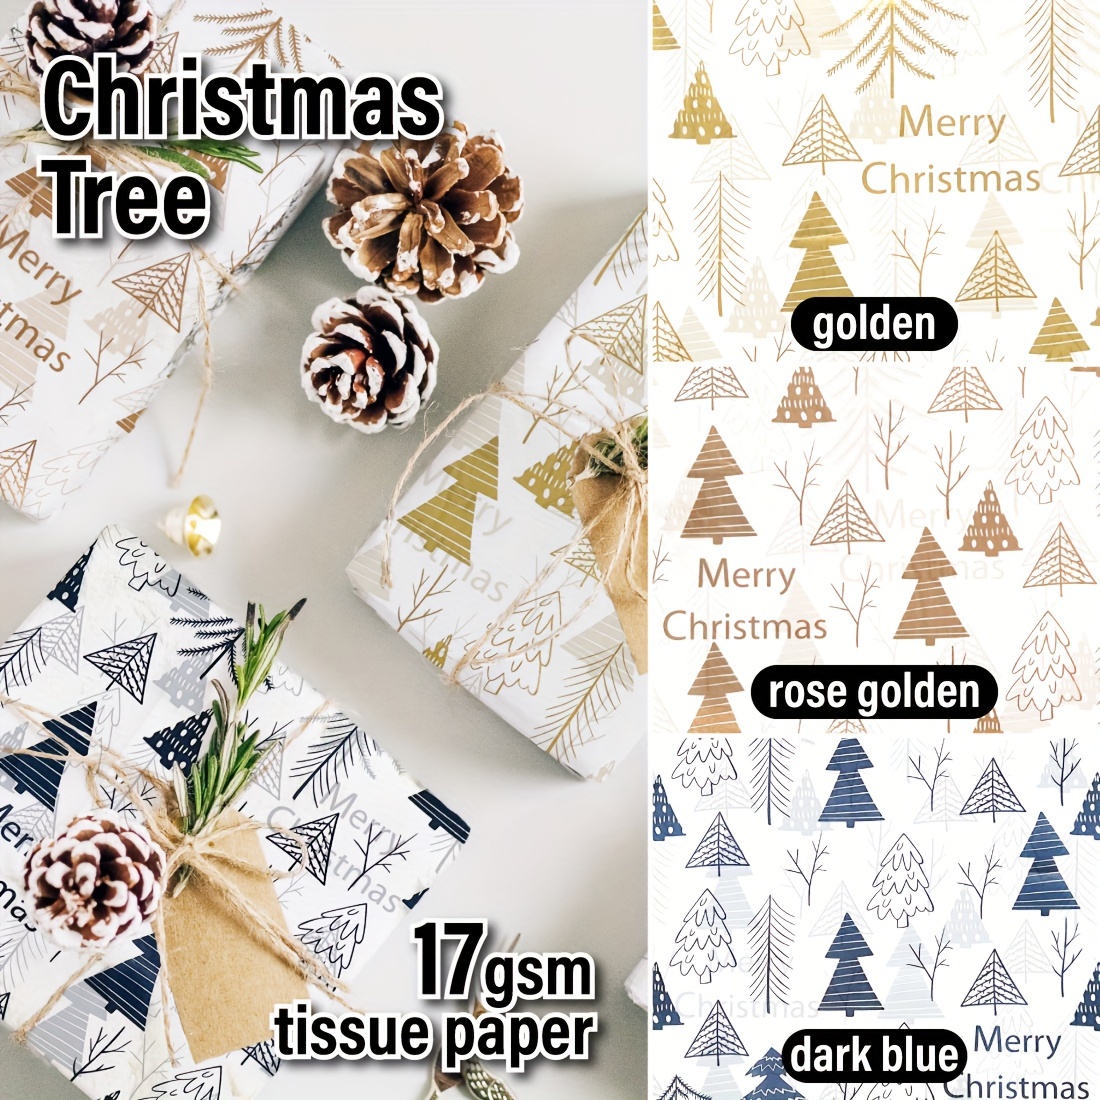 Light Blue Bulk Tissue Paper,Tissue Paper, Gift Grade Tissue Paper Sheets -  20 x 30,Blue Tissue Paper, Gift Wrap, Christmas, Birthdays